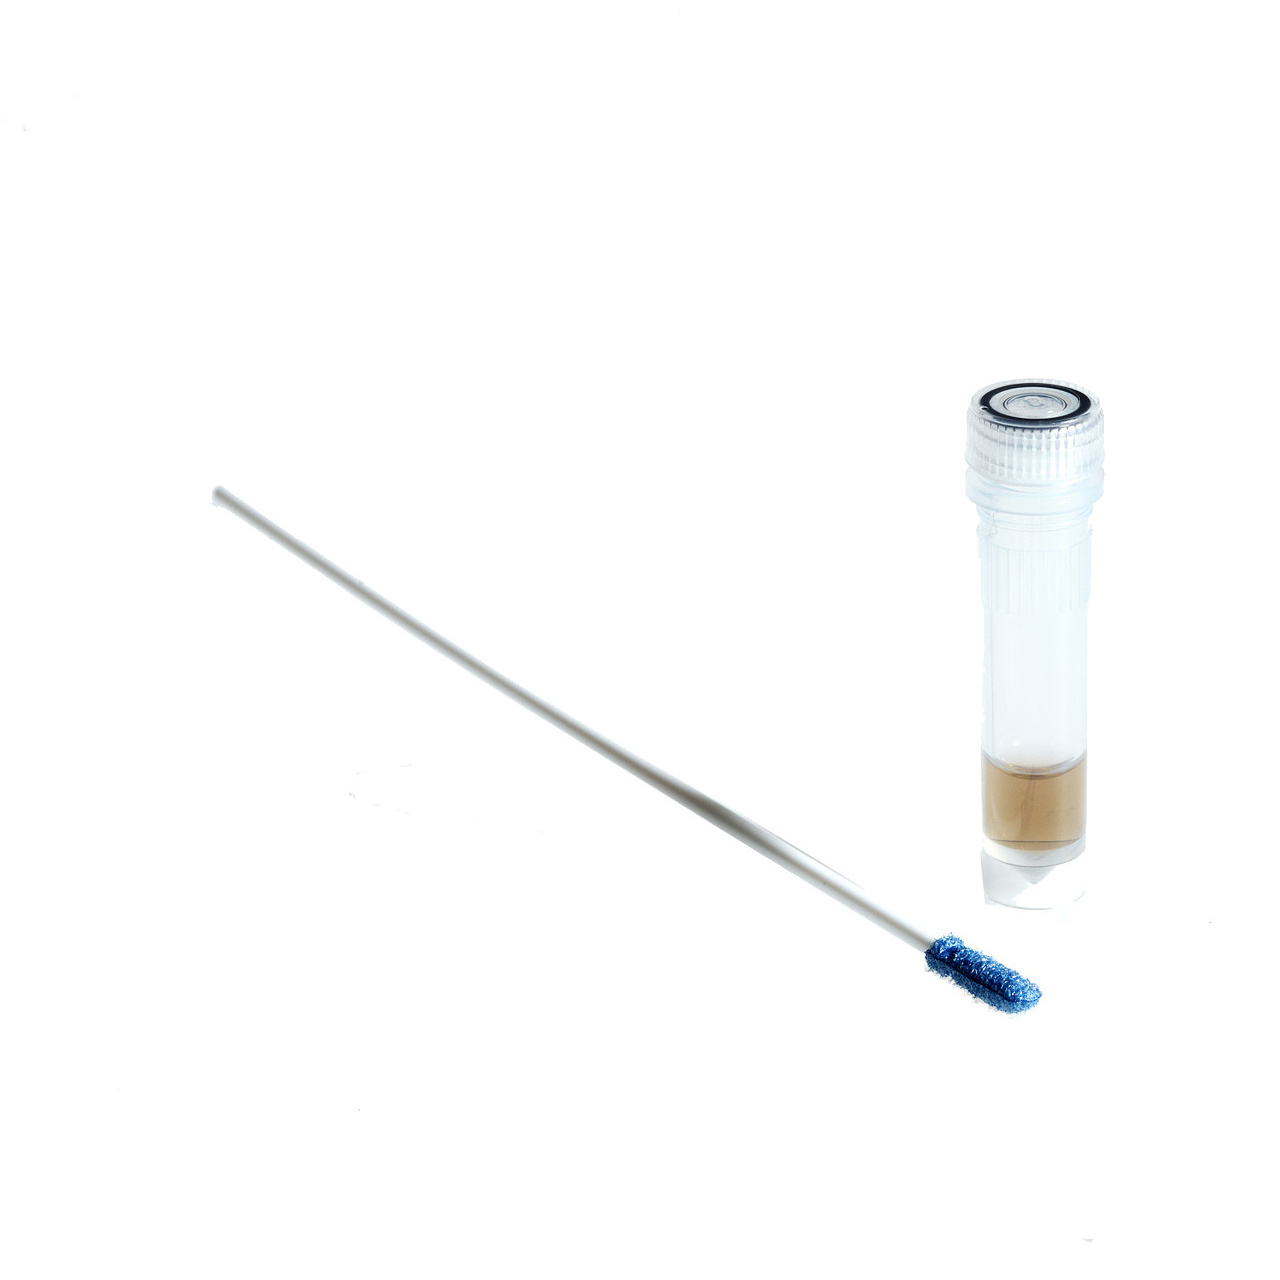 Getinge Assured Protein Instrument